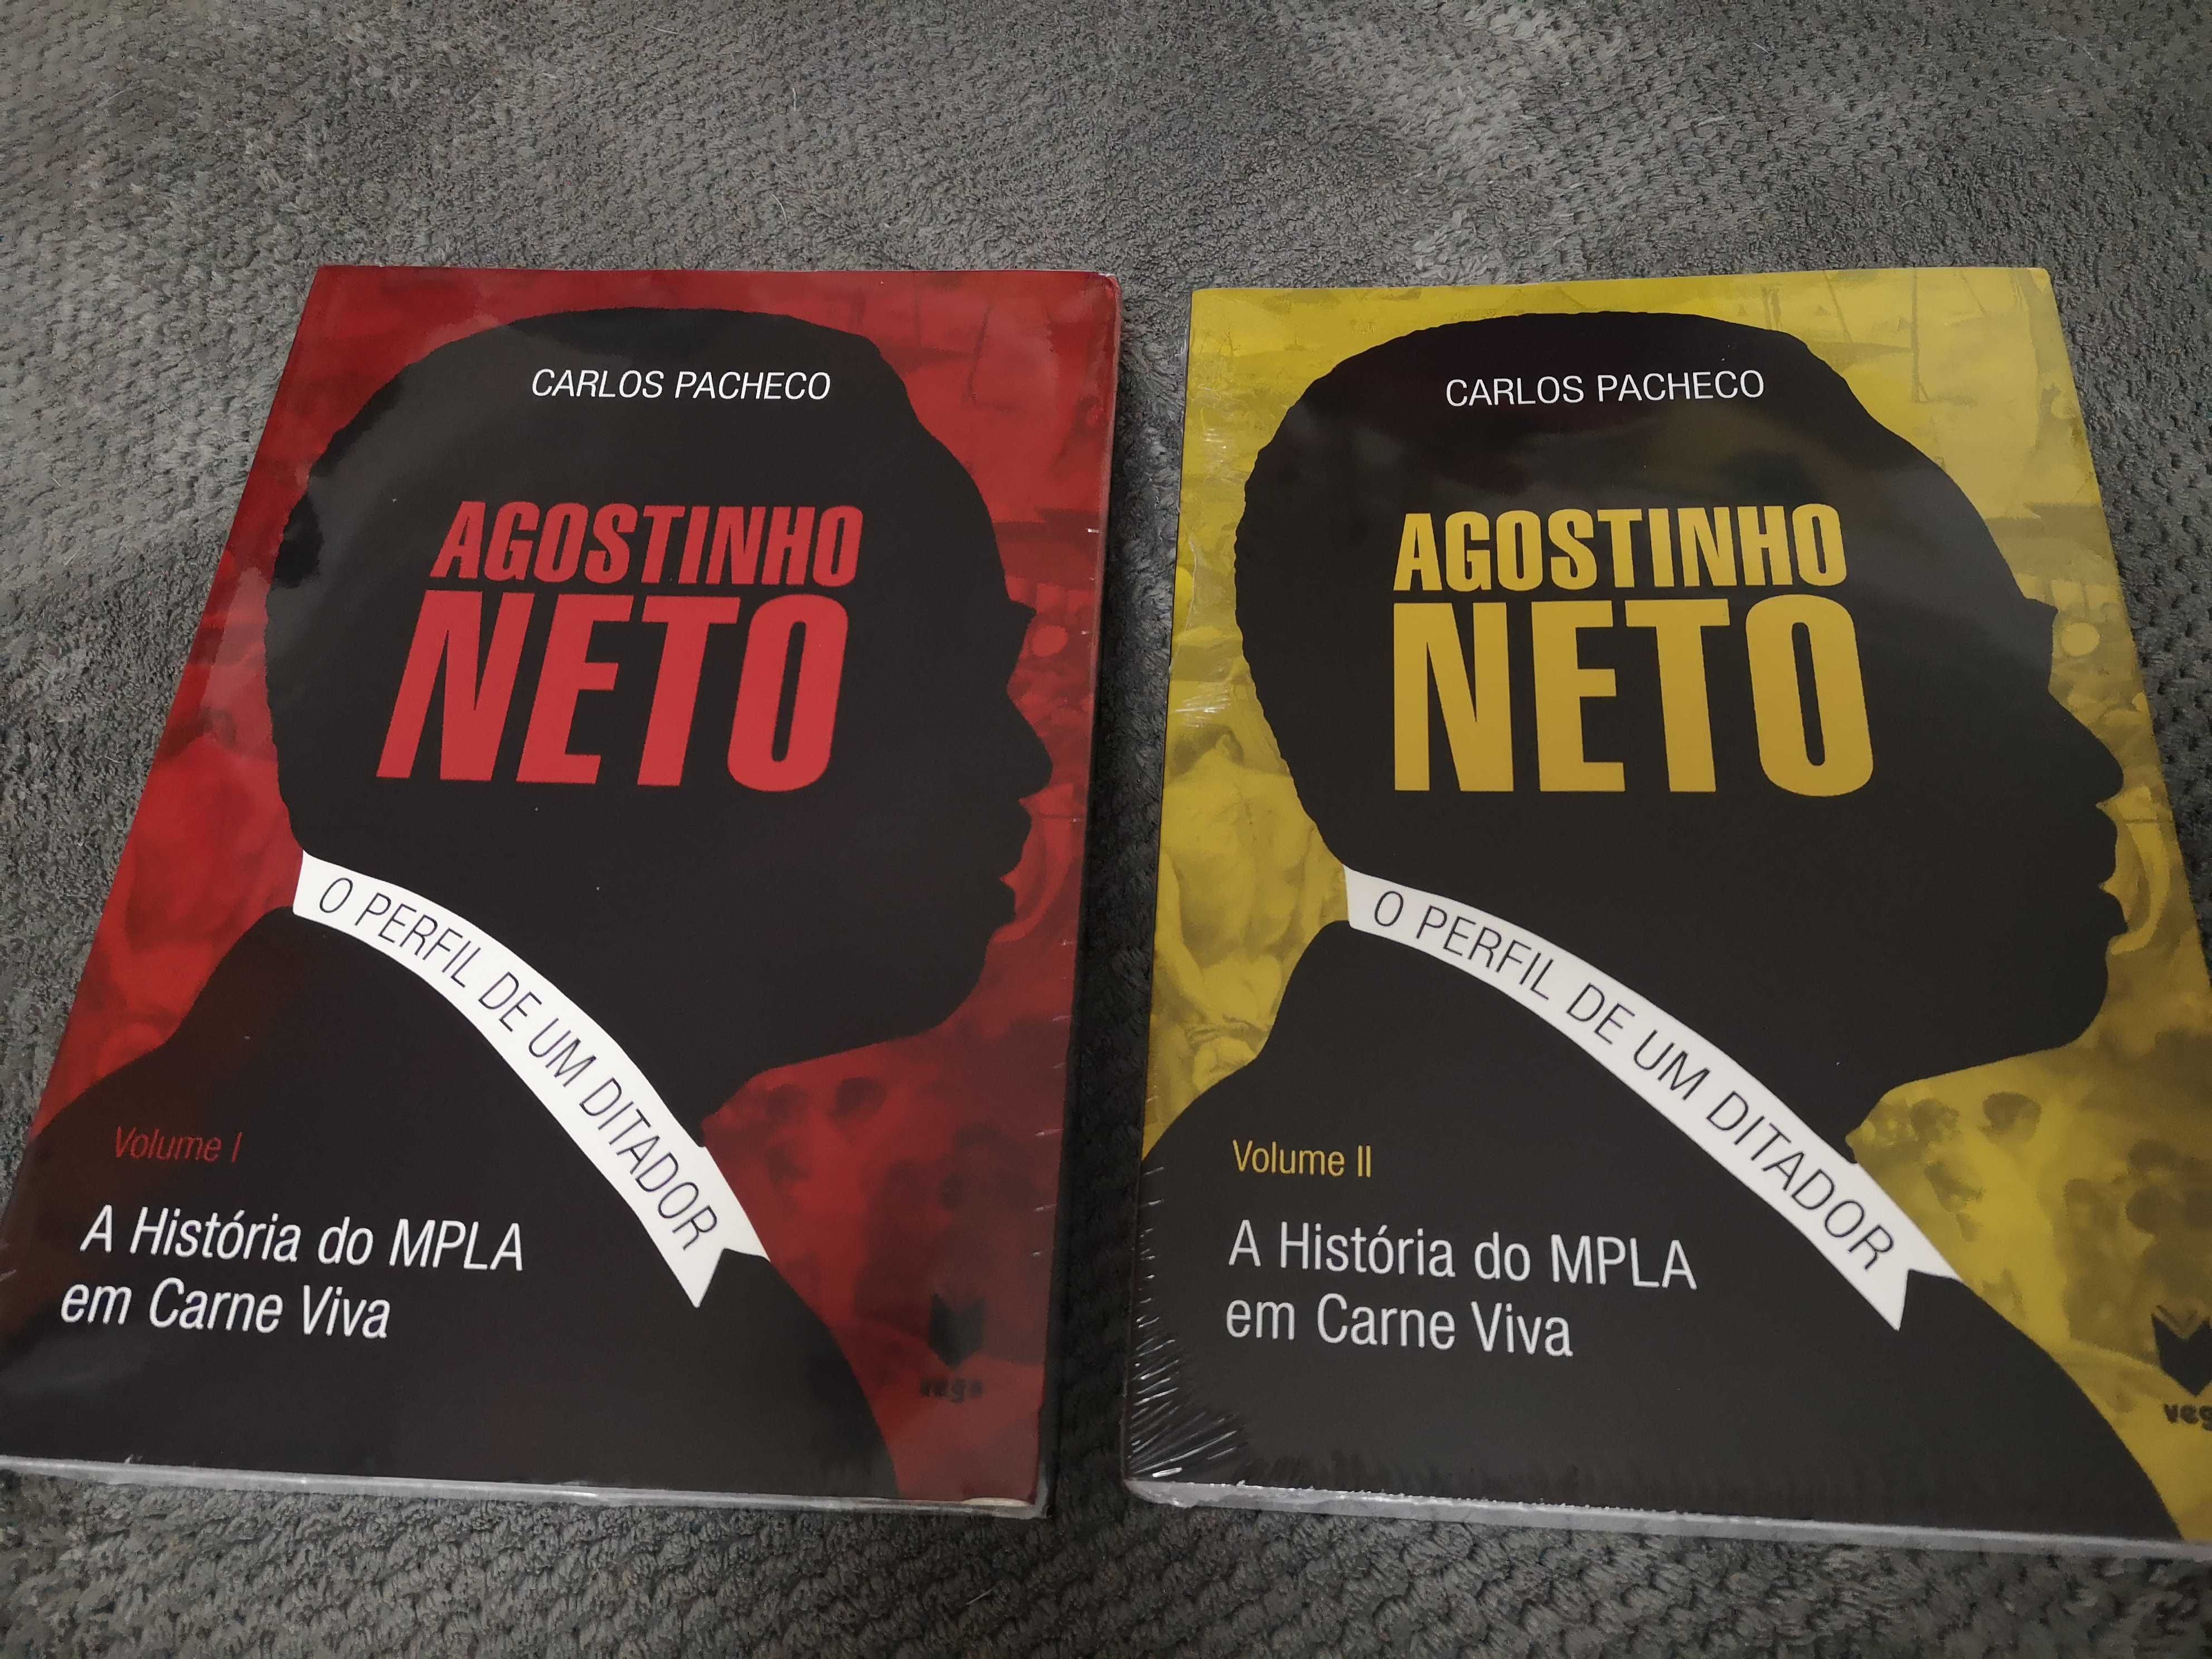 Agostinho Neto Perfil de um Ditador
A História do MPLA  EM Carne VIVA